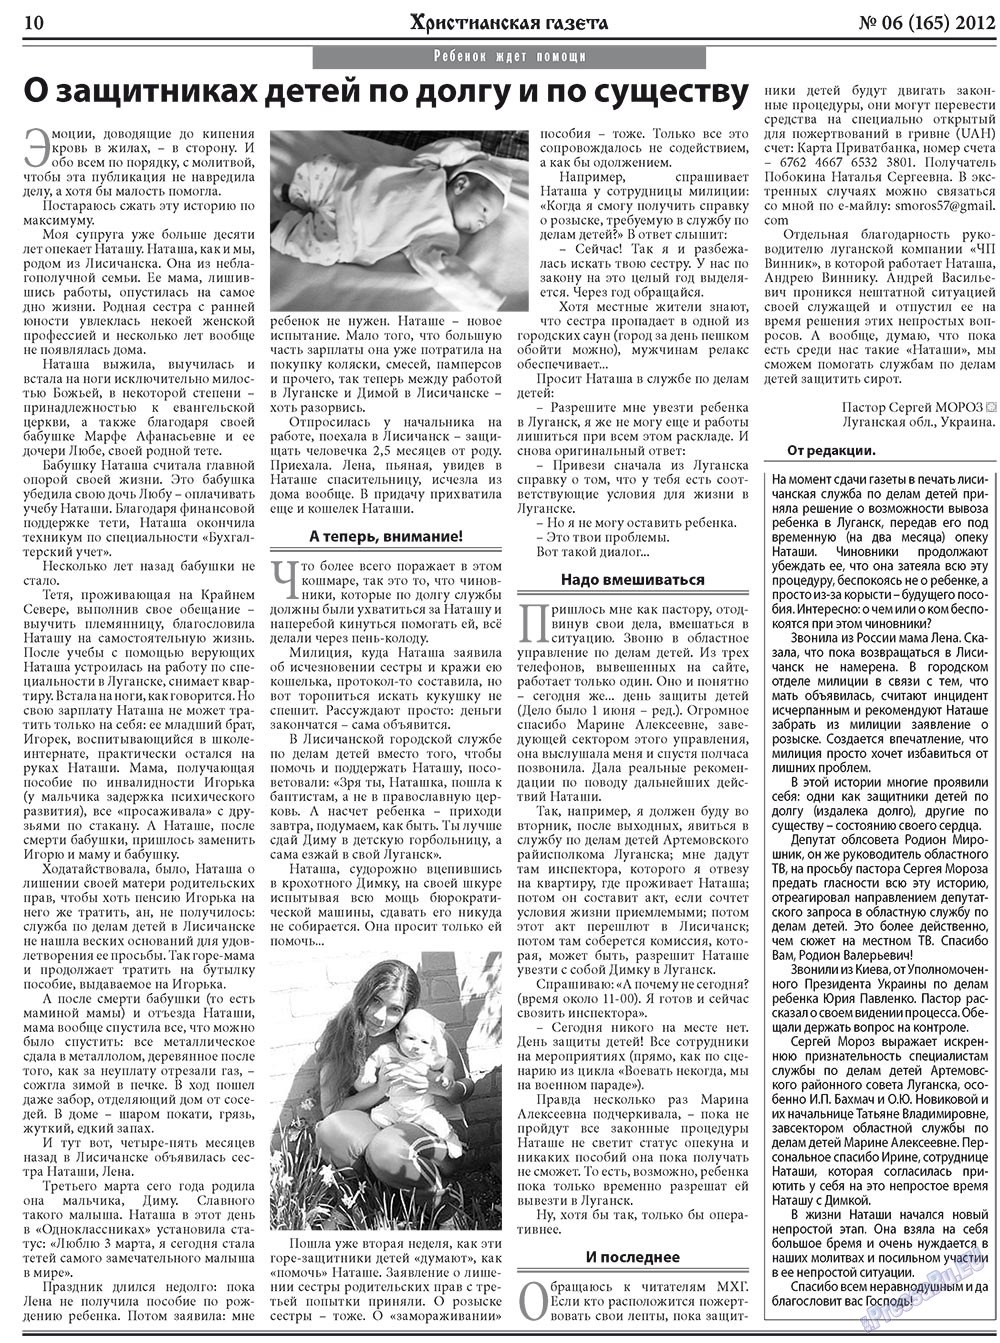 Христианская газета, газета. 2012 №6 стр.10